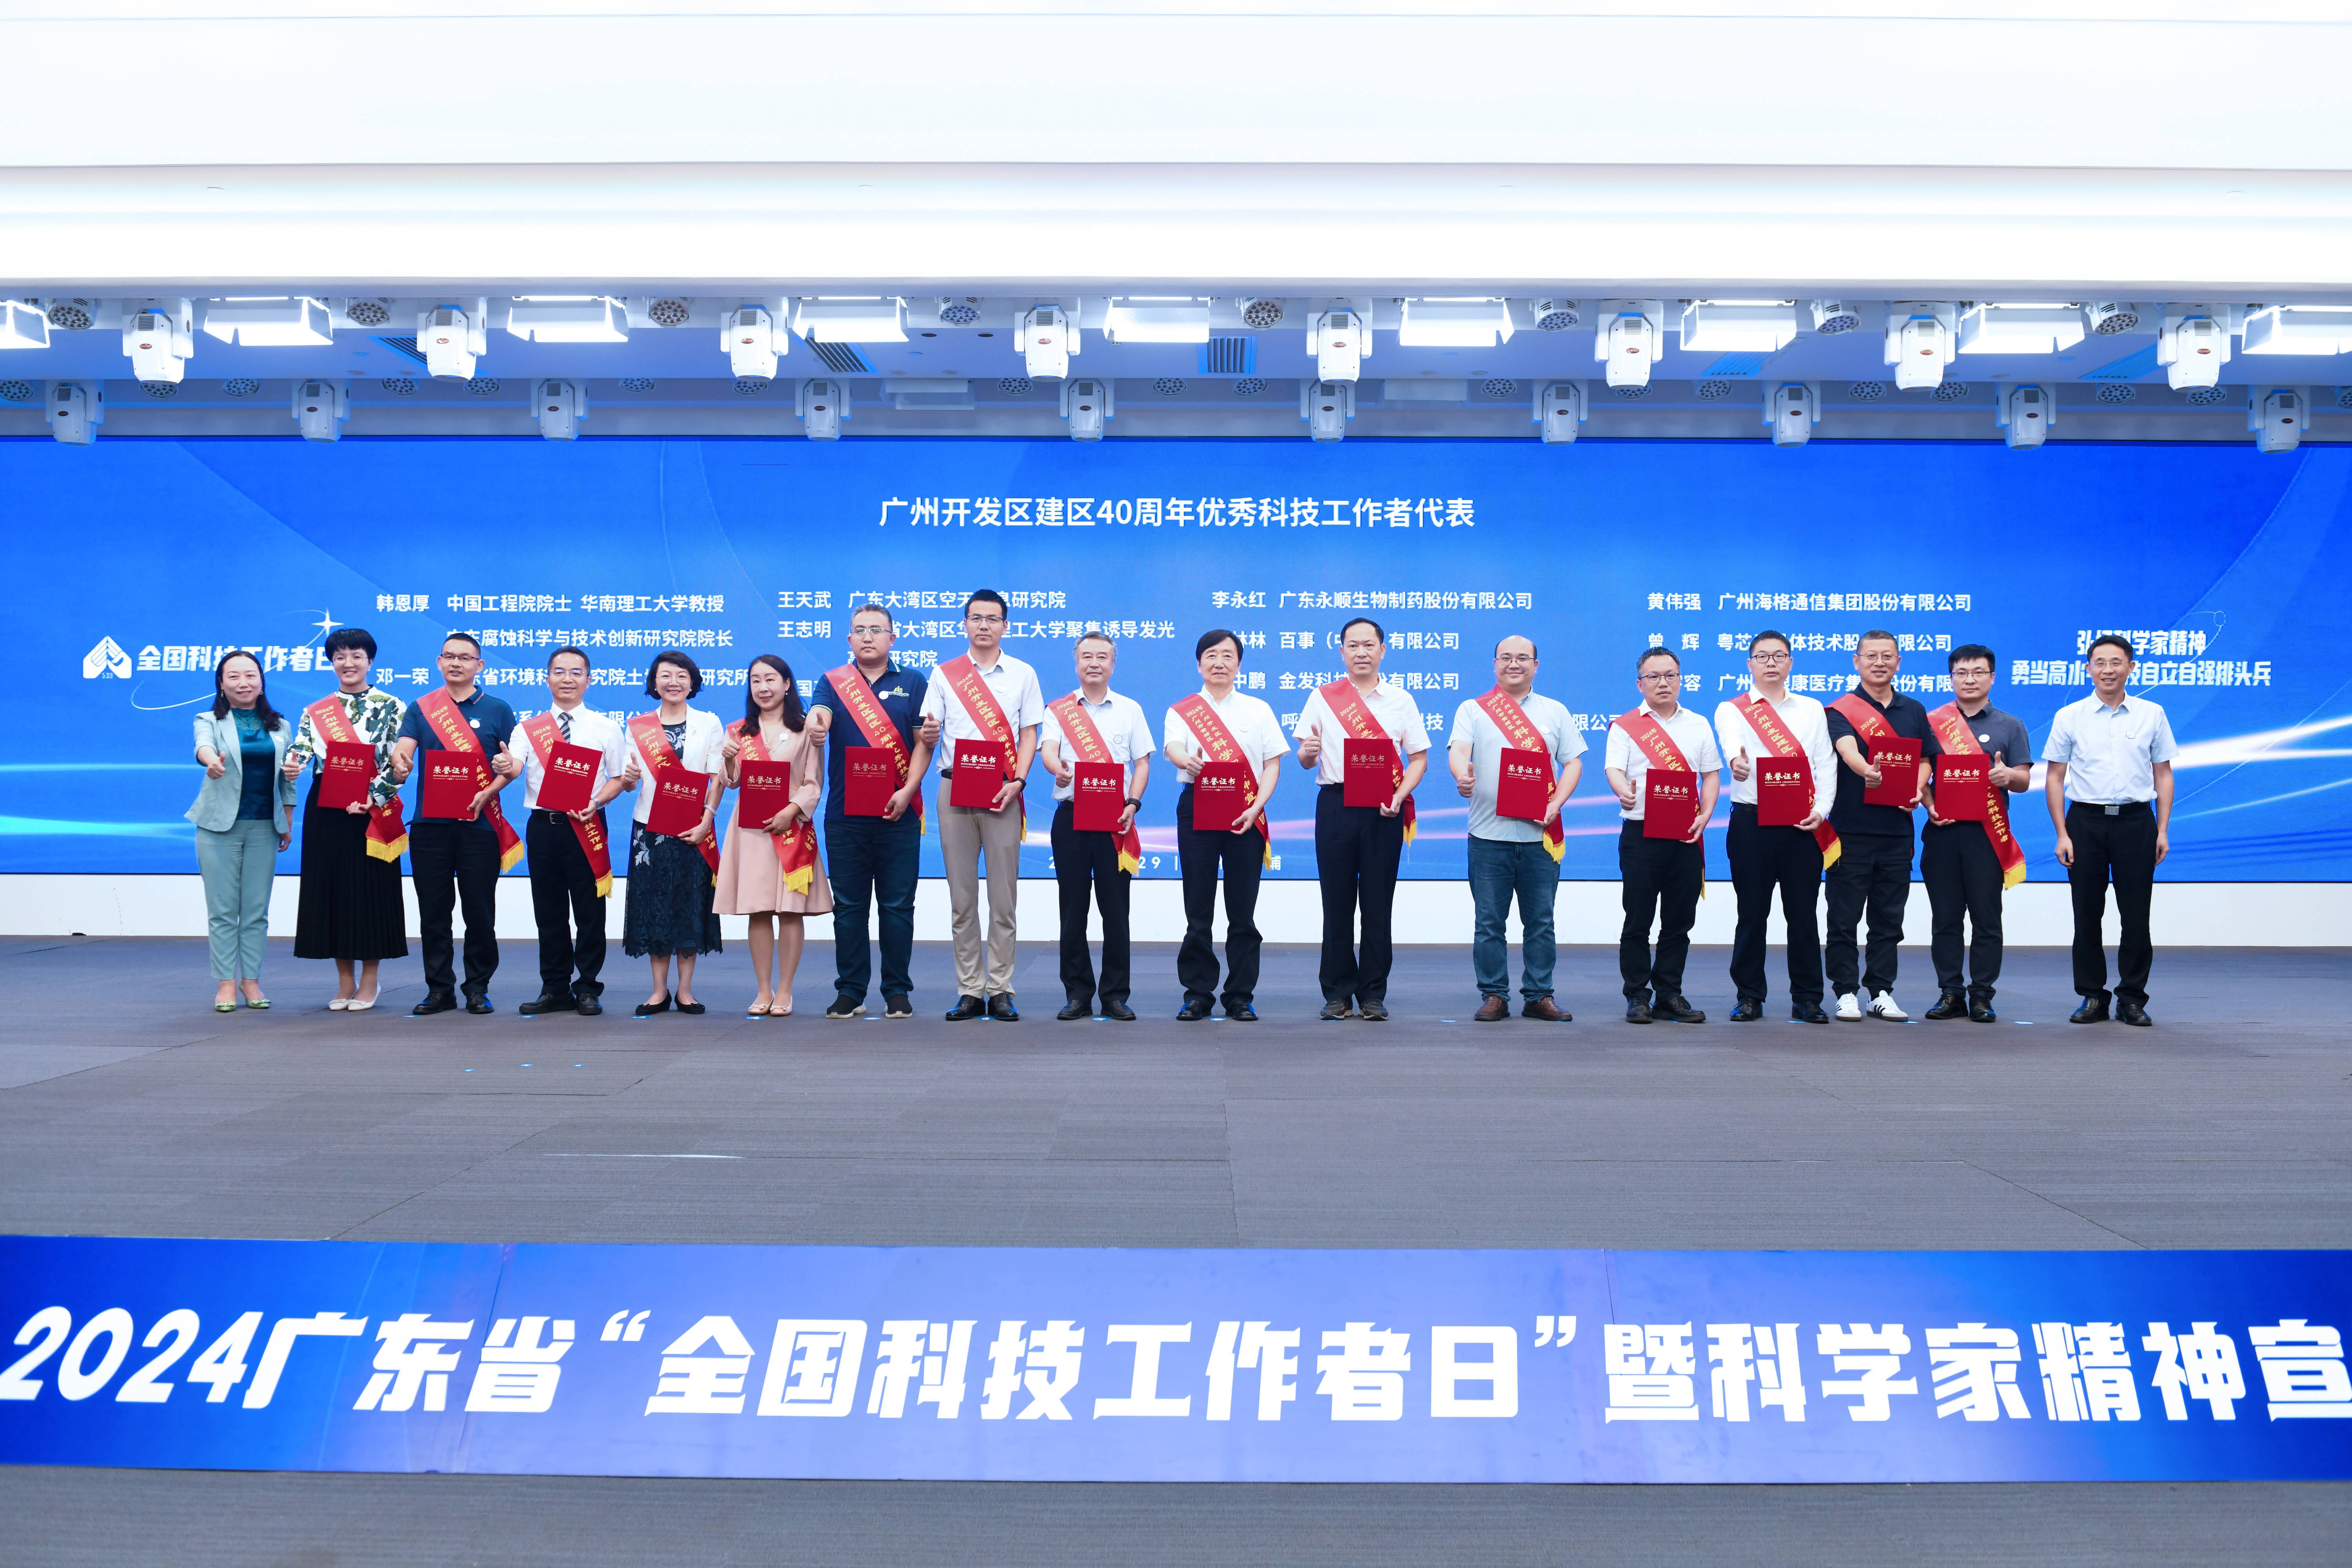 迎接第八个全国科技工作者日,广东省科协在行动